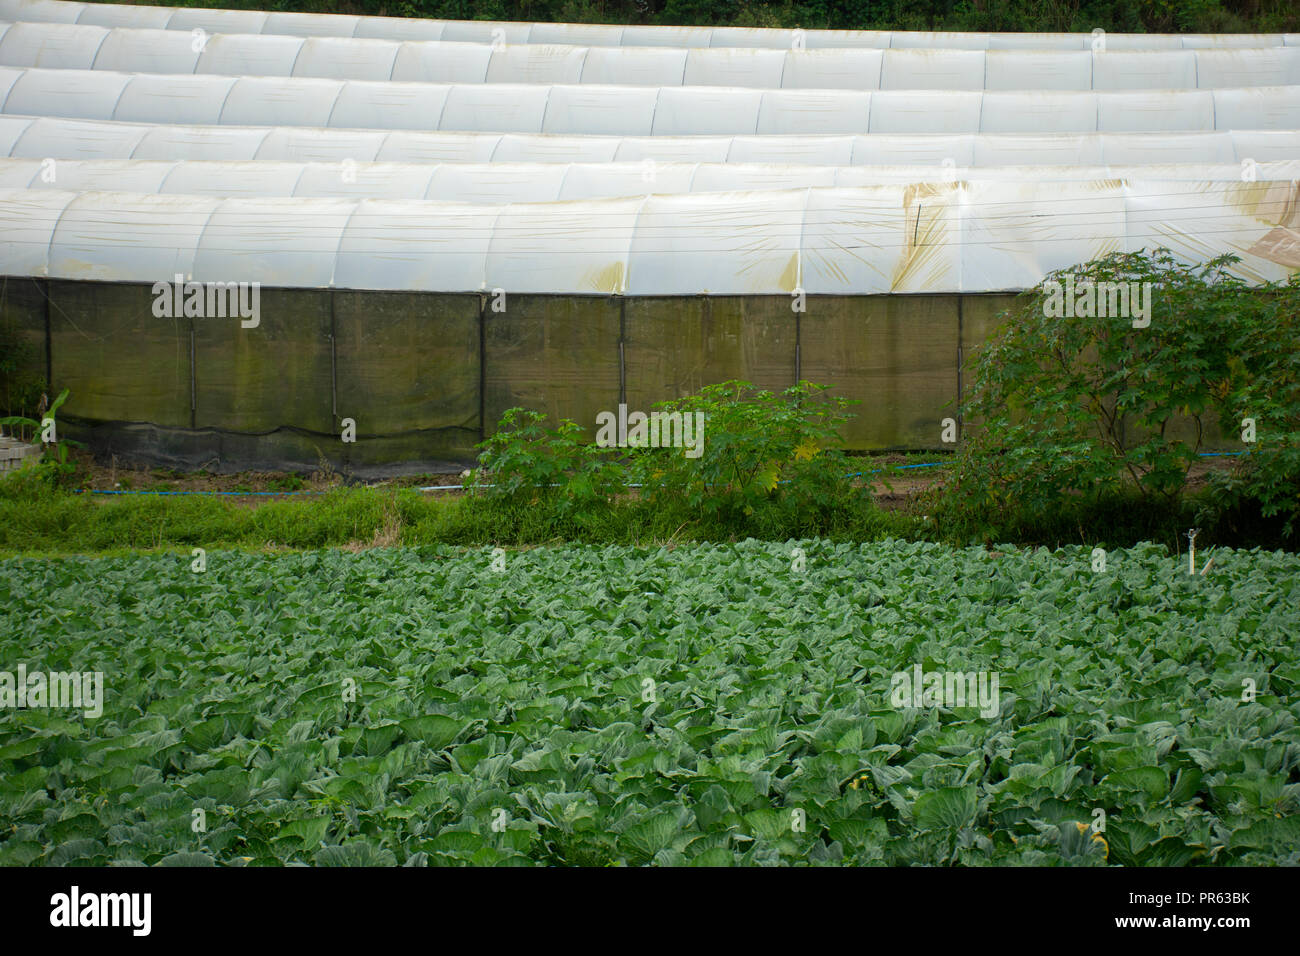 Vegetable crop in a small farm, Venda Nova do Imigrante, Espirito Santo, Brazil Stock Photo